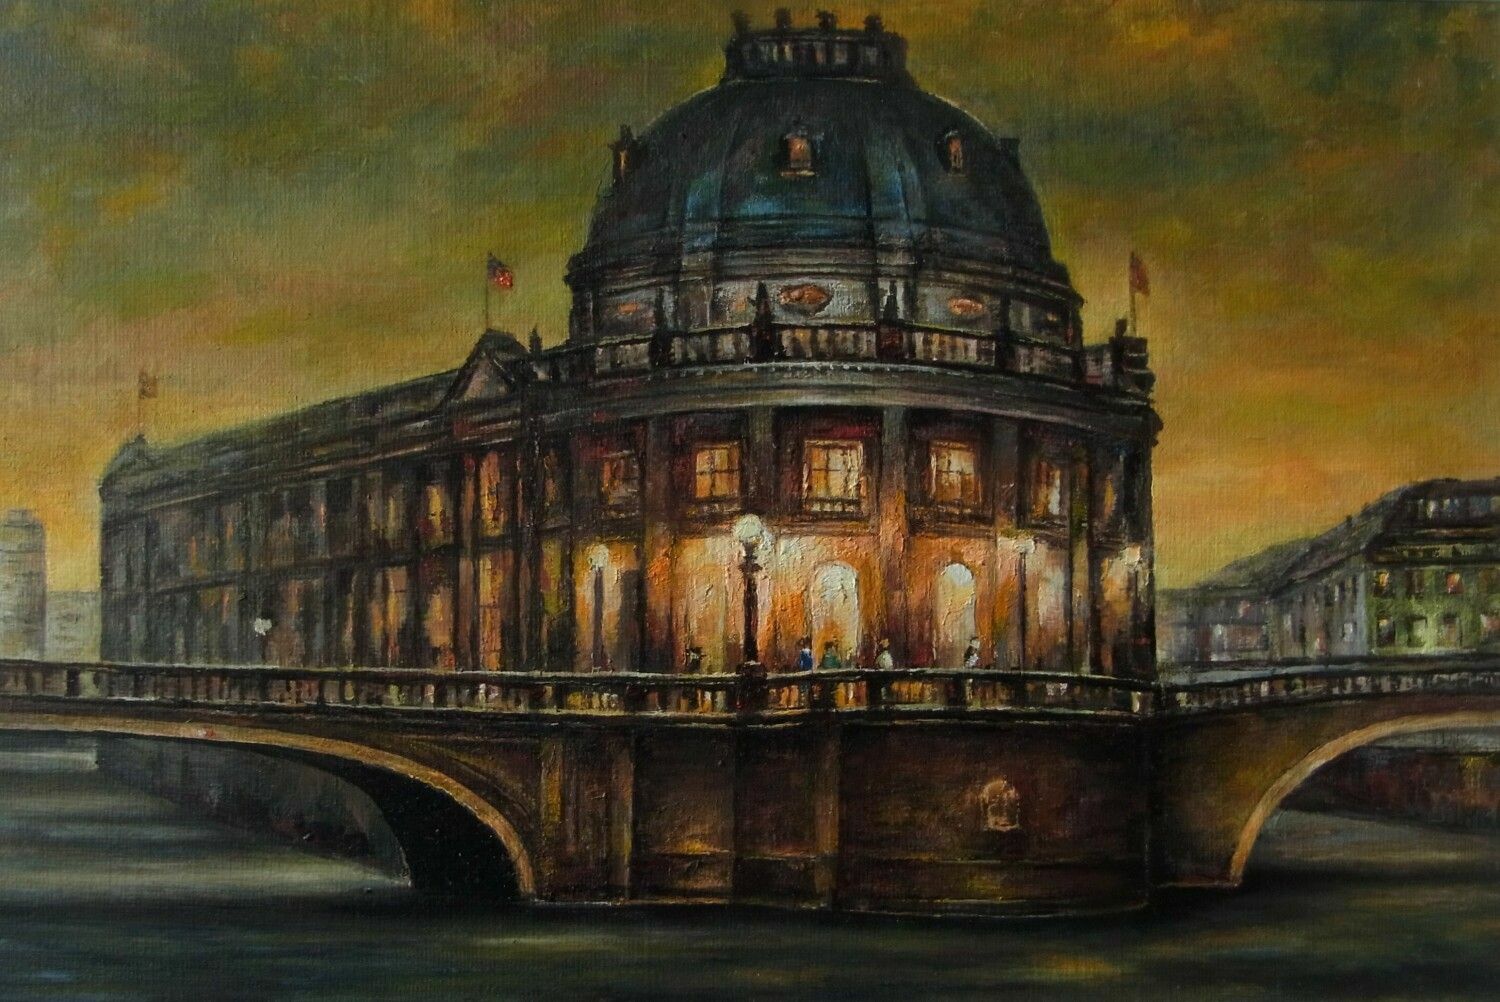 Das Ölbild "Am Bodemuseum" zeigt die Wasseransicht des Museums während der Dämmerung, es leuchten der Himmel das Licht von Laternen auf der Brücke